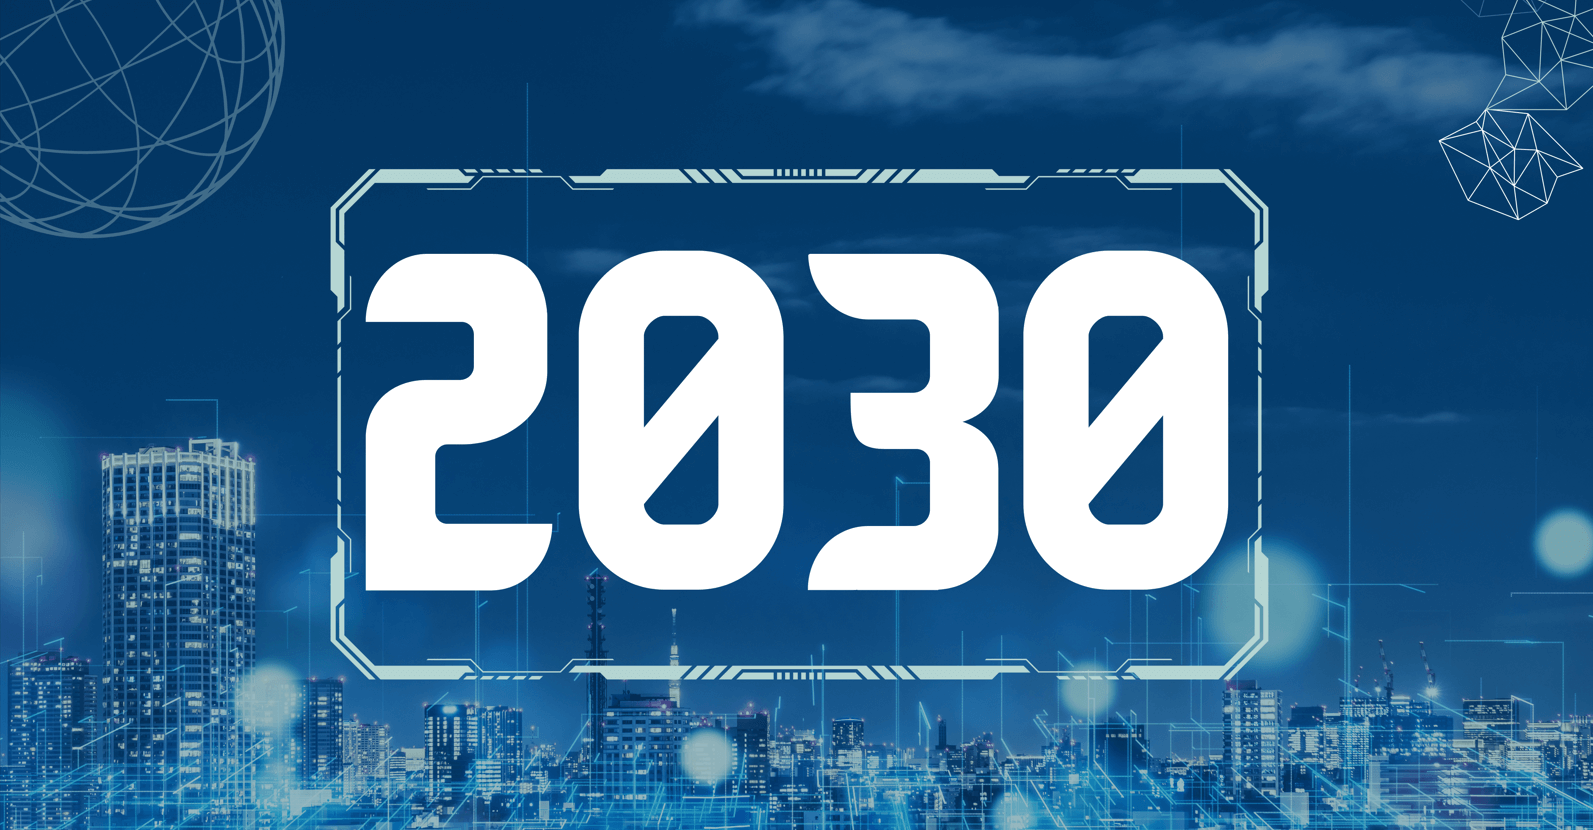 AI Predictions for 2030